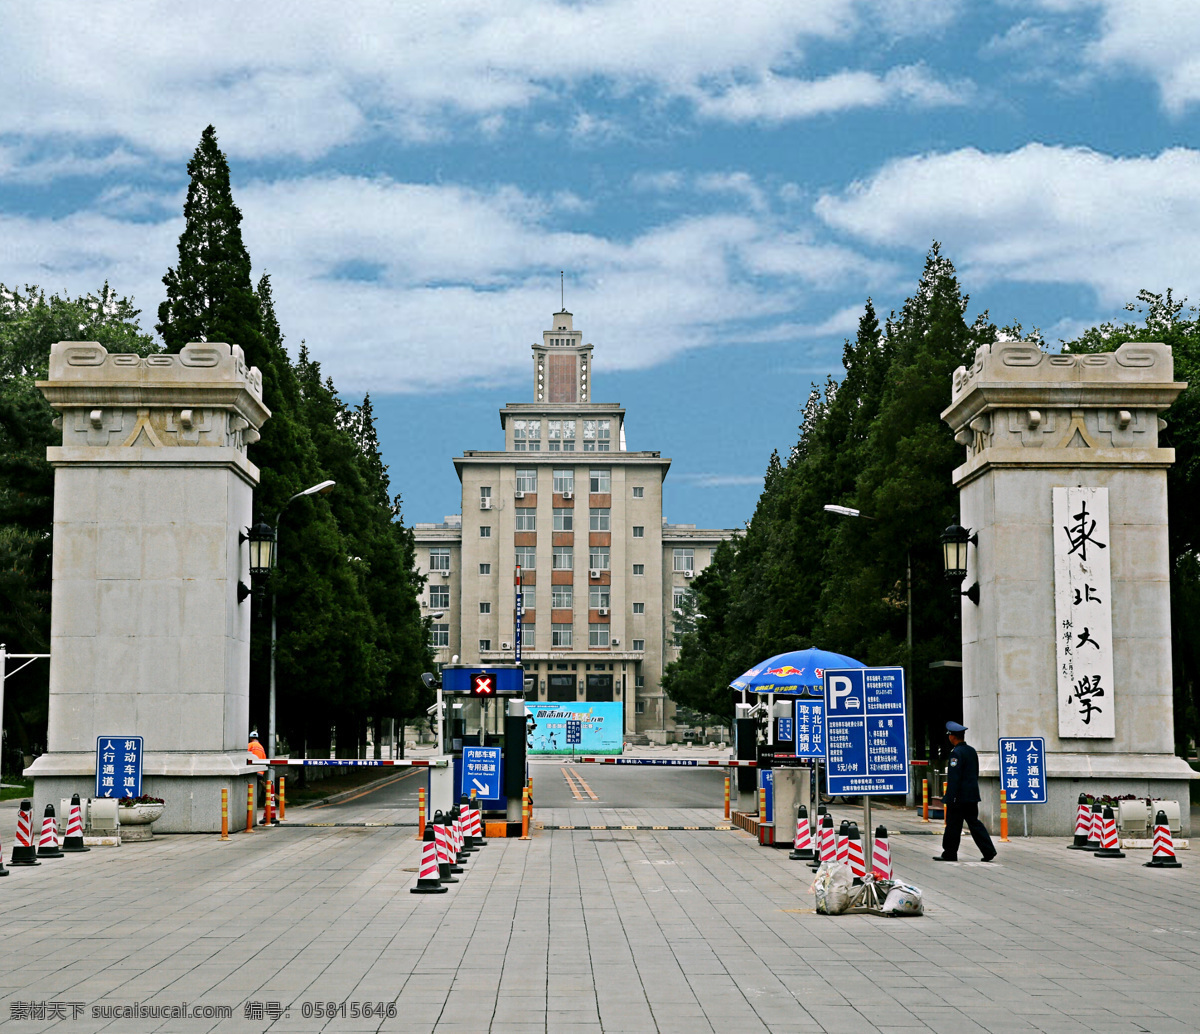 大学 正门 东北大学 天空 风景摄影 旅游摄影 国内旅游